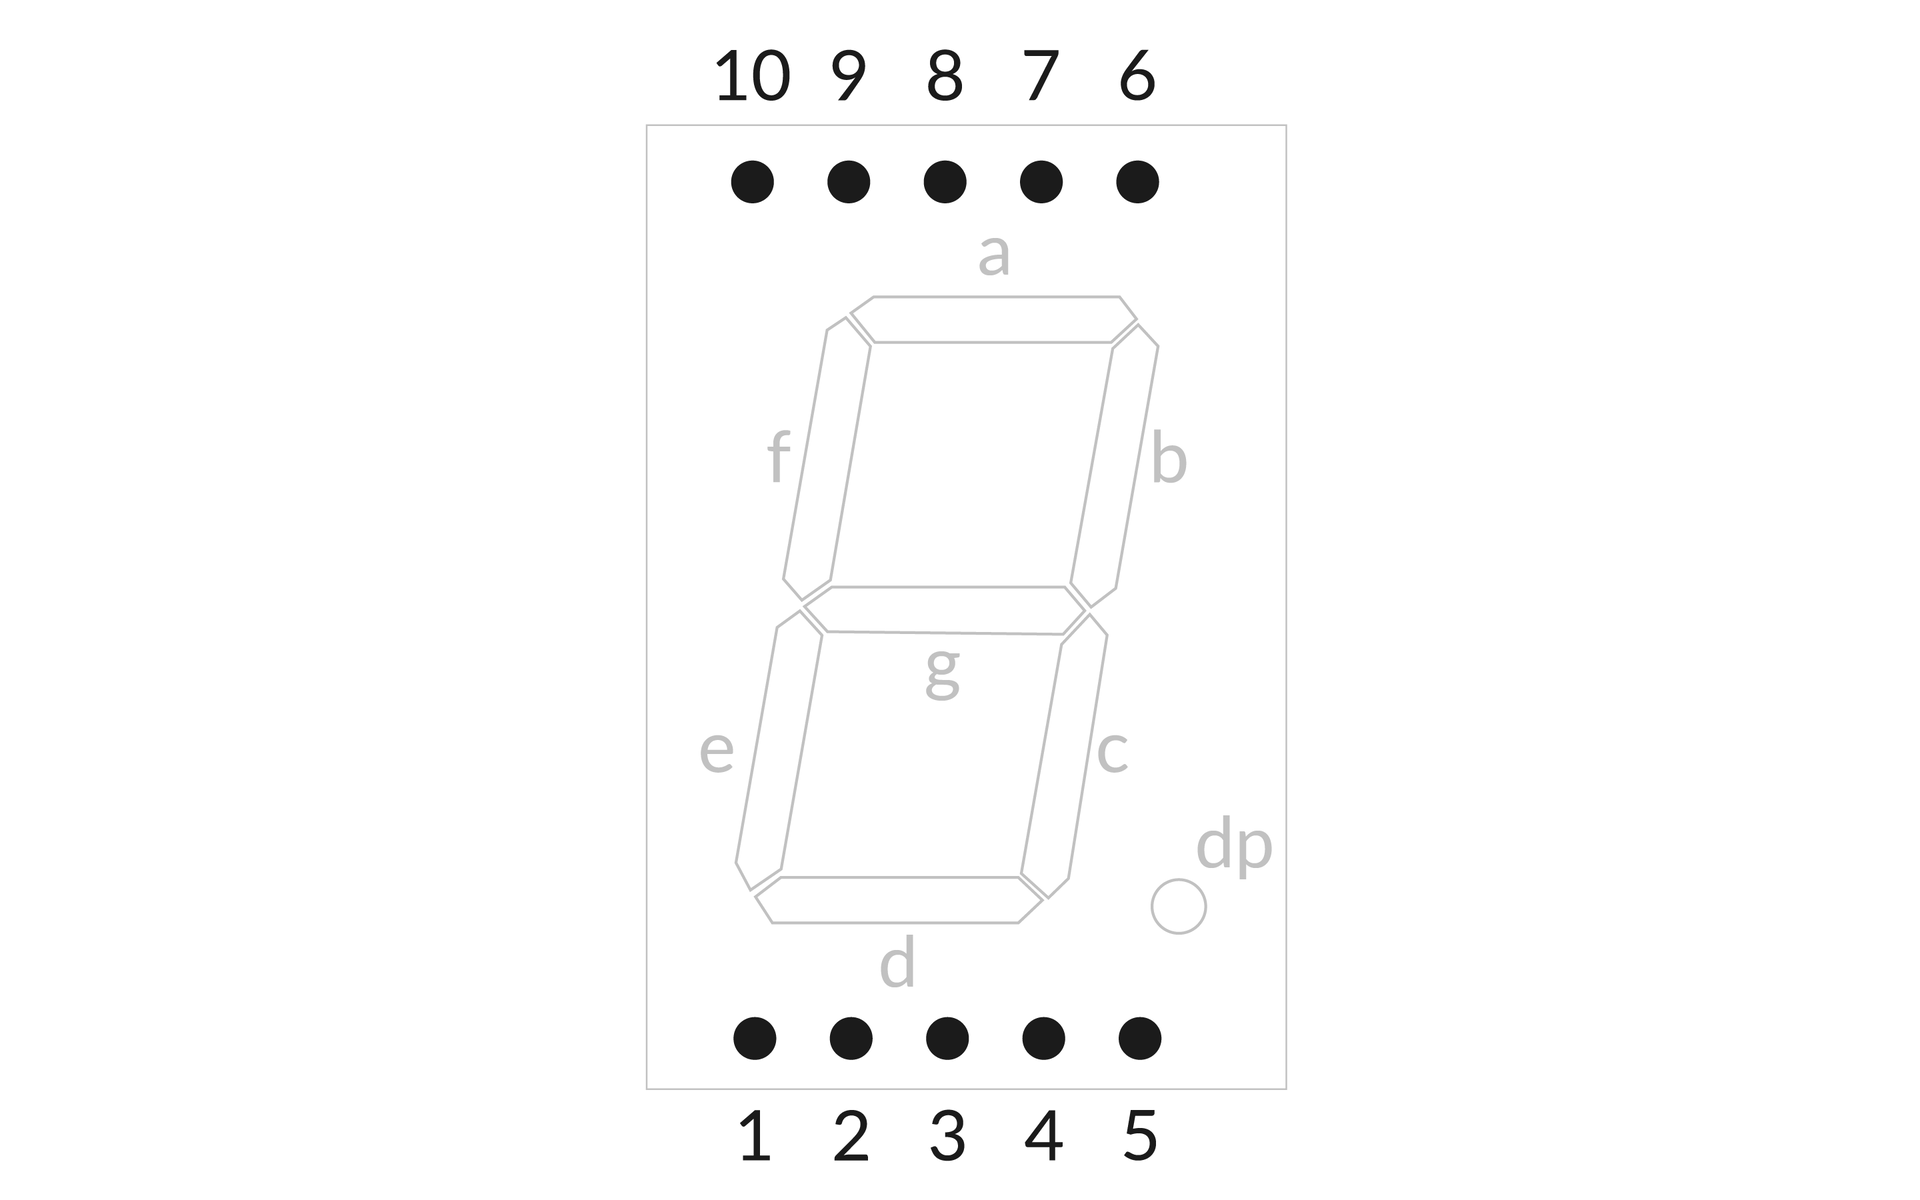 Rysunek przedstawiający kolejność numeracji poszczególnych pinów w wyświetlaczu jednocyfrowym. Numeracja zaczyna się od dołu z lewej strony, przechodzi poziomo w prawo aż do pięciu, a następnie z prawego górnego rogu rośnie do dziesięciu w lewo.